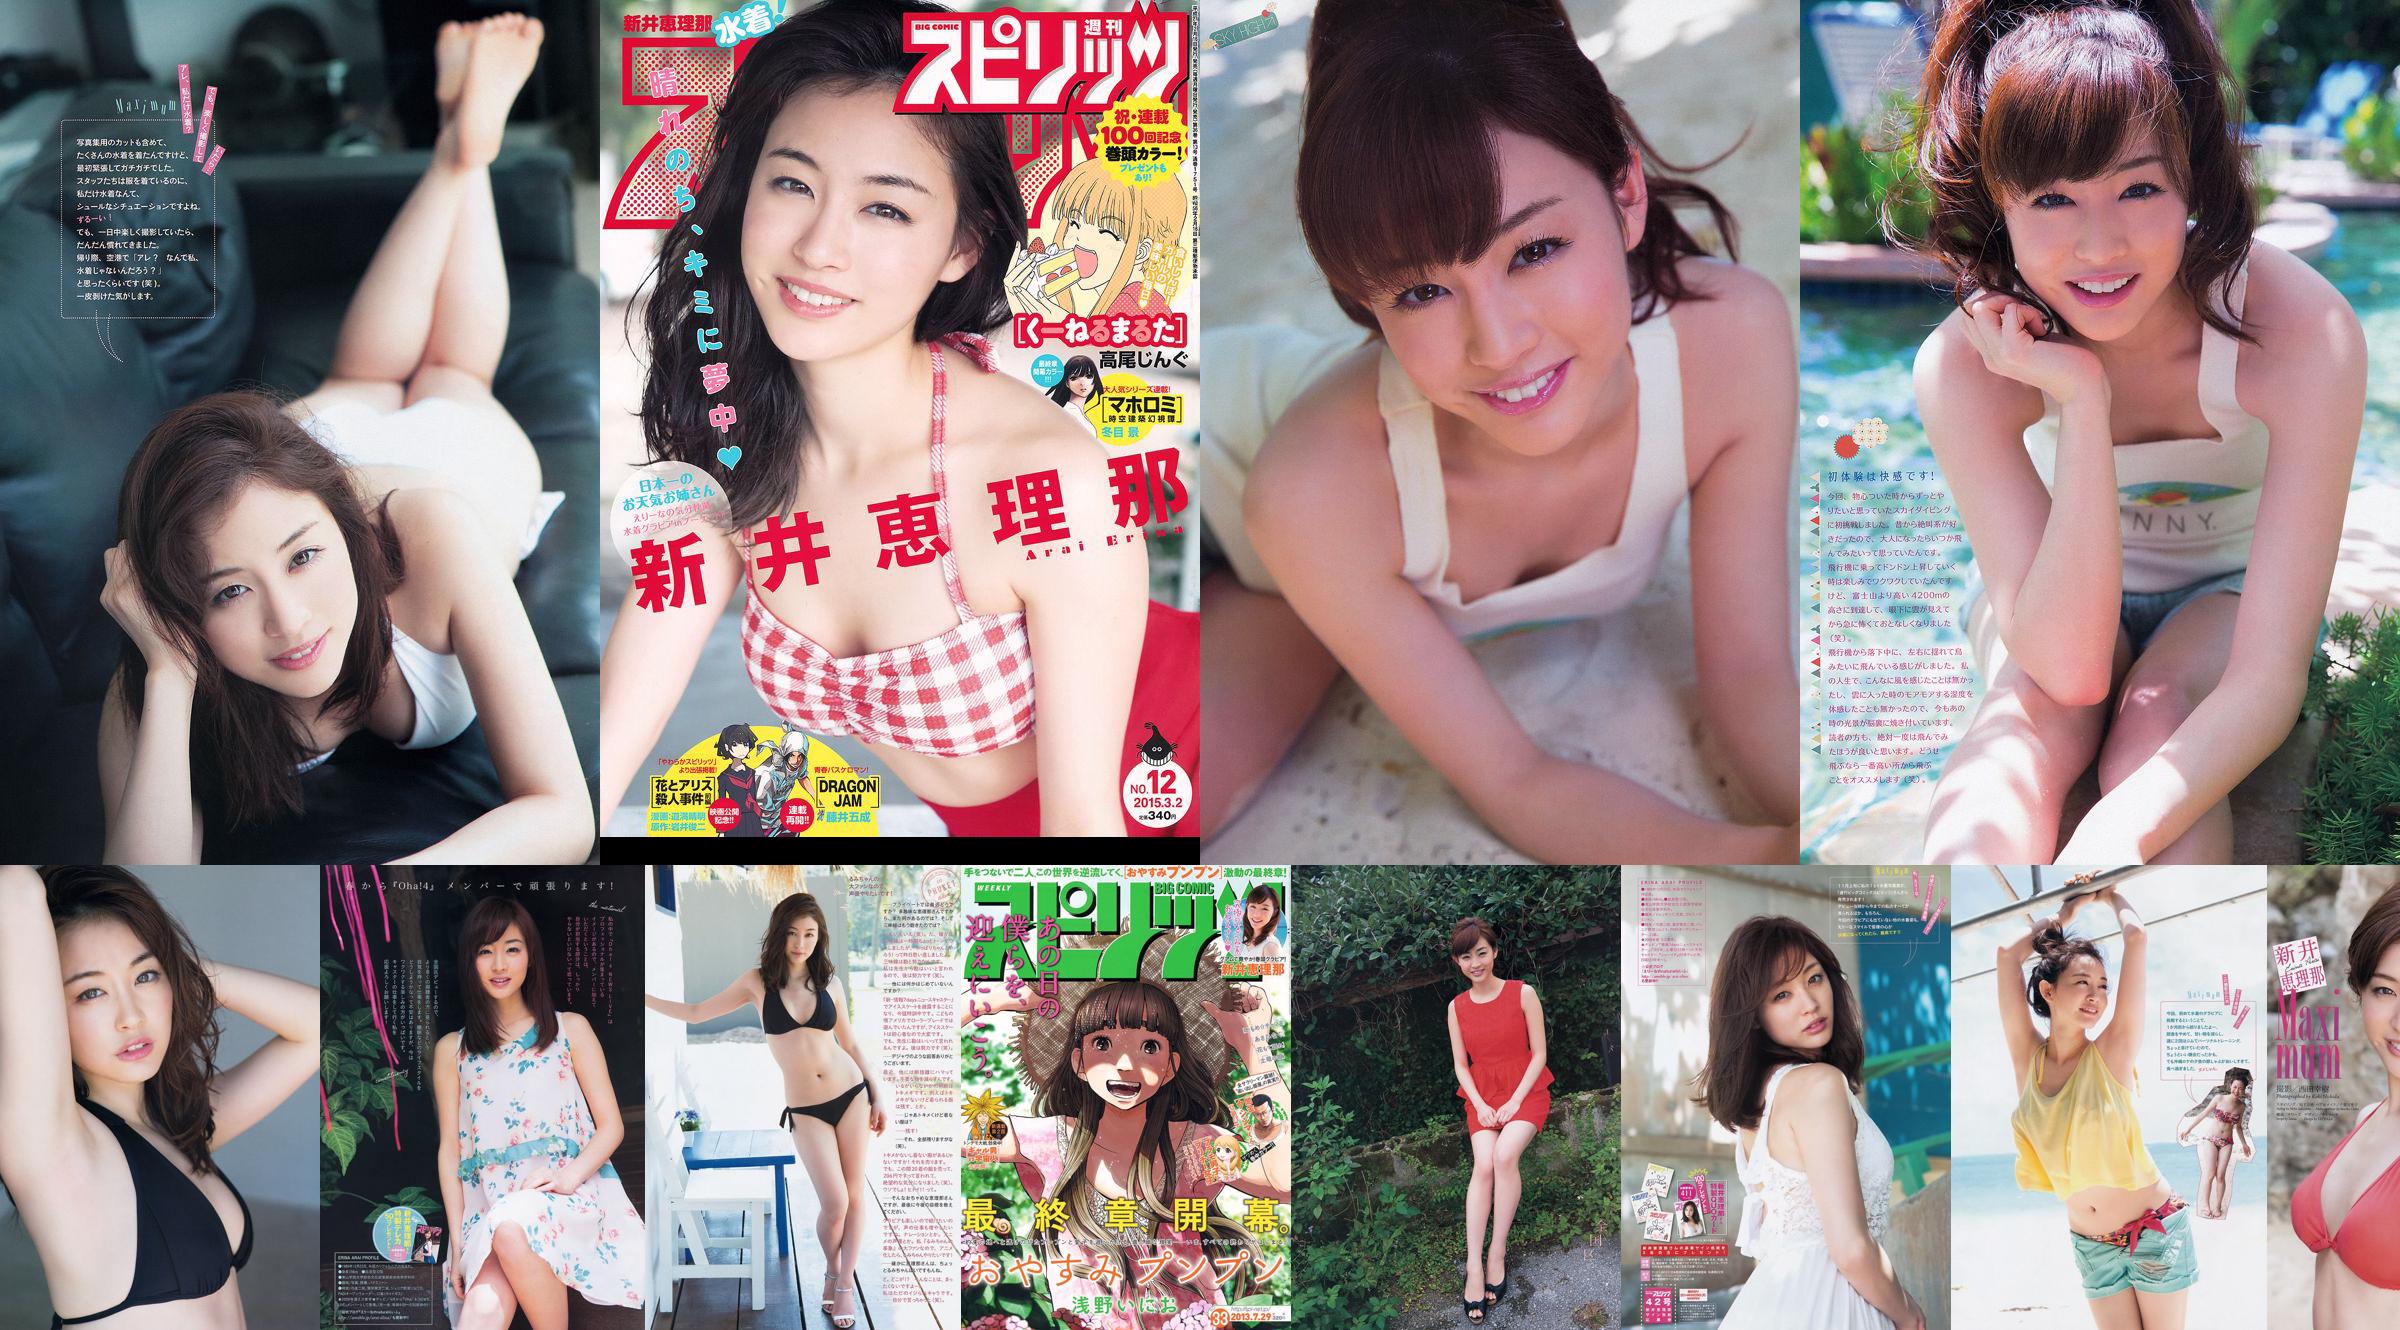 Haruka Shimazaki Yui Yokoyama Moeno Nito Ayame Misaki Chinami Suzuki Nami Iwasaki [Wöchentlicher Playboy] 2012 Nr. 51 Foto Mori No.1cfd6e Seite 1